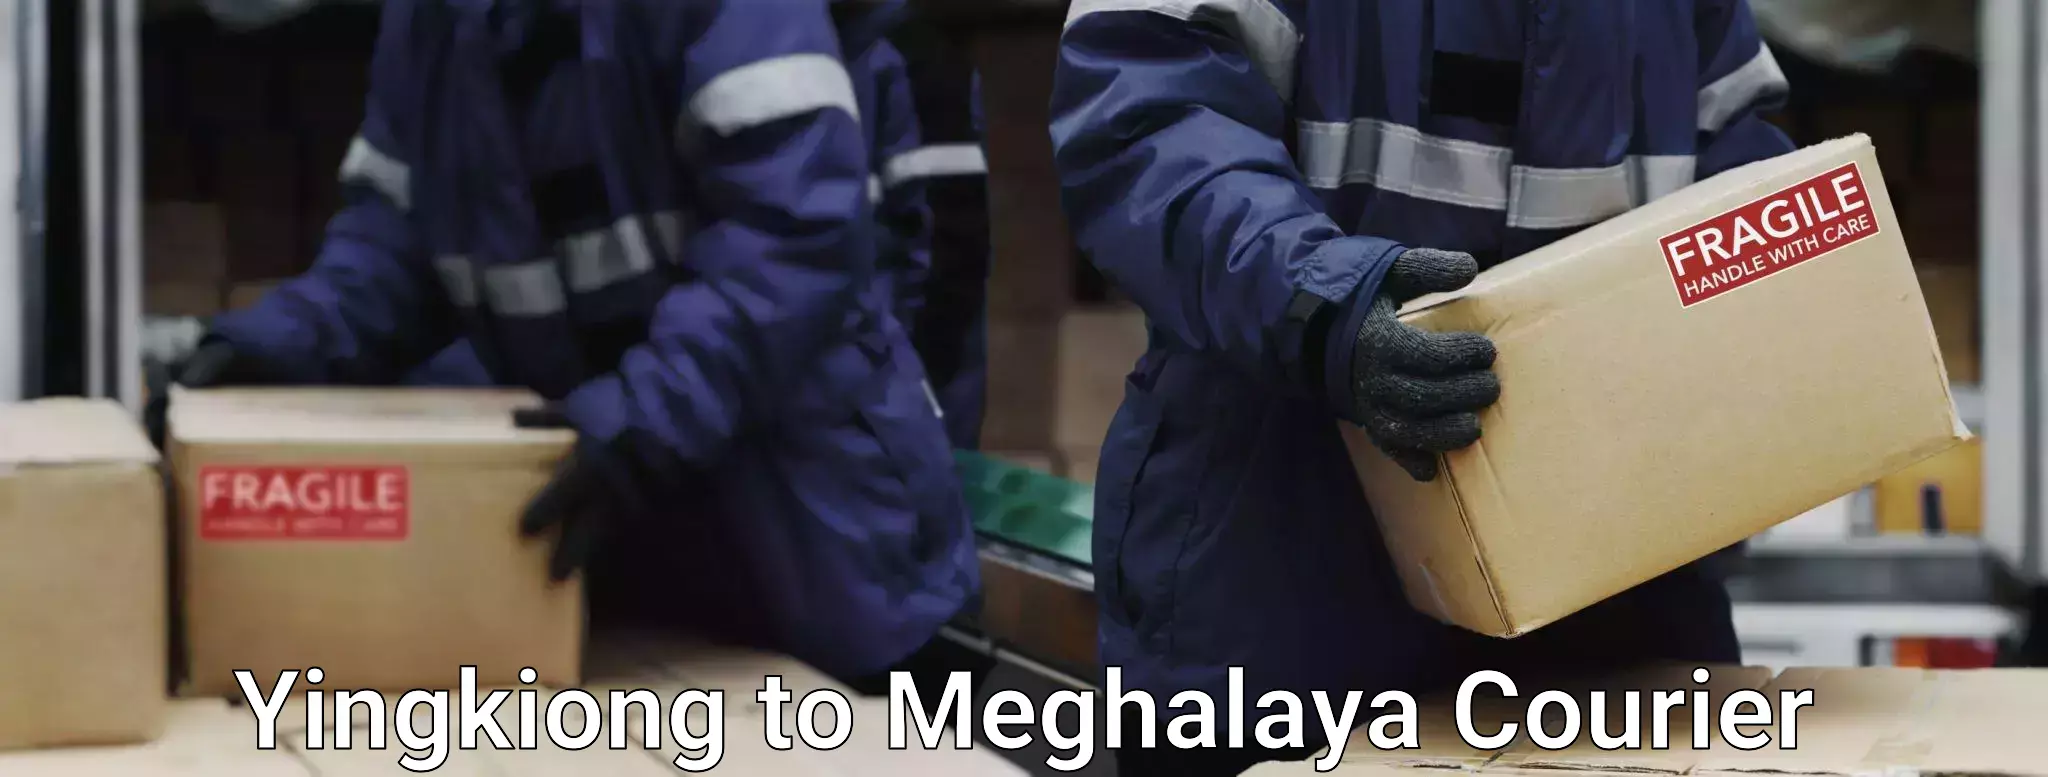 Baggage transport management Yingkiong to Meghalaya